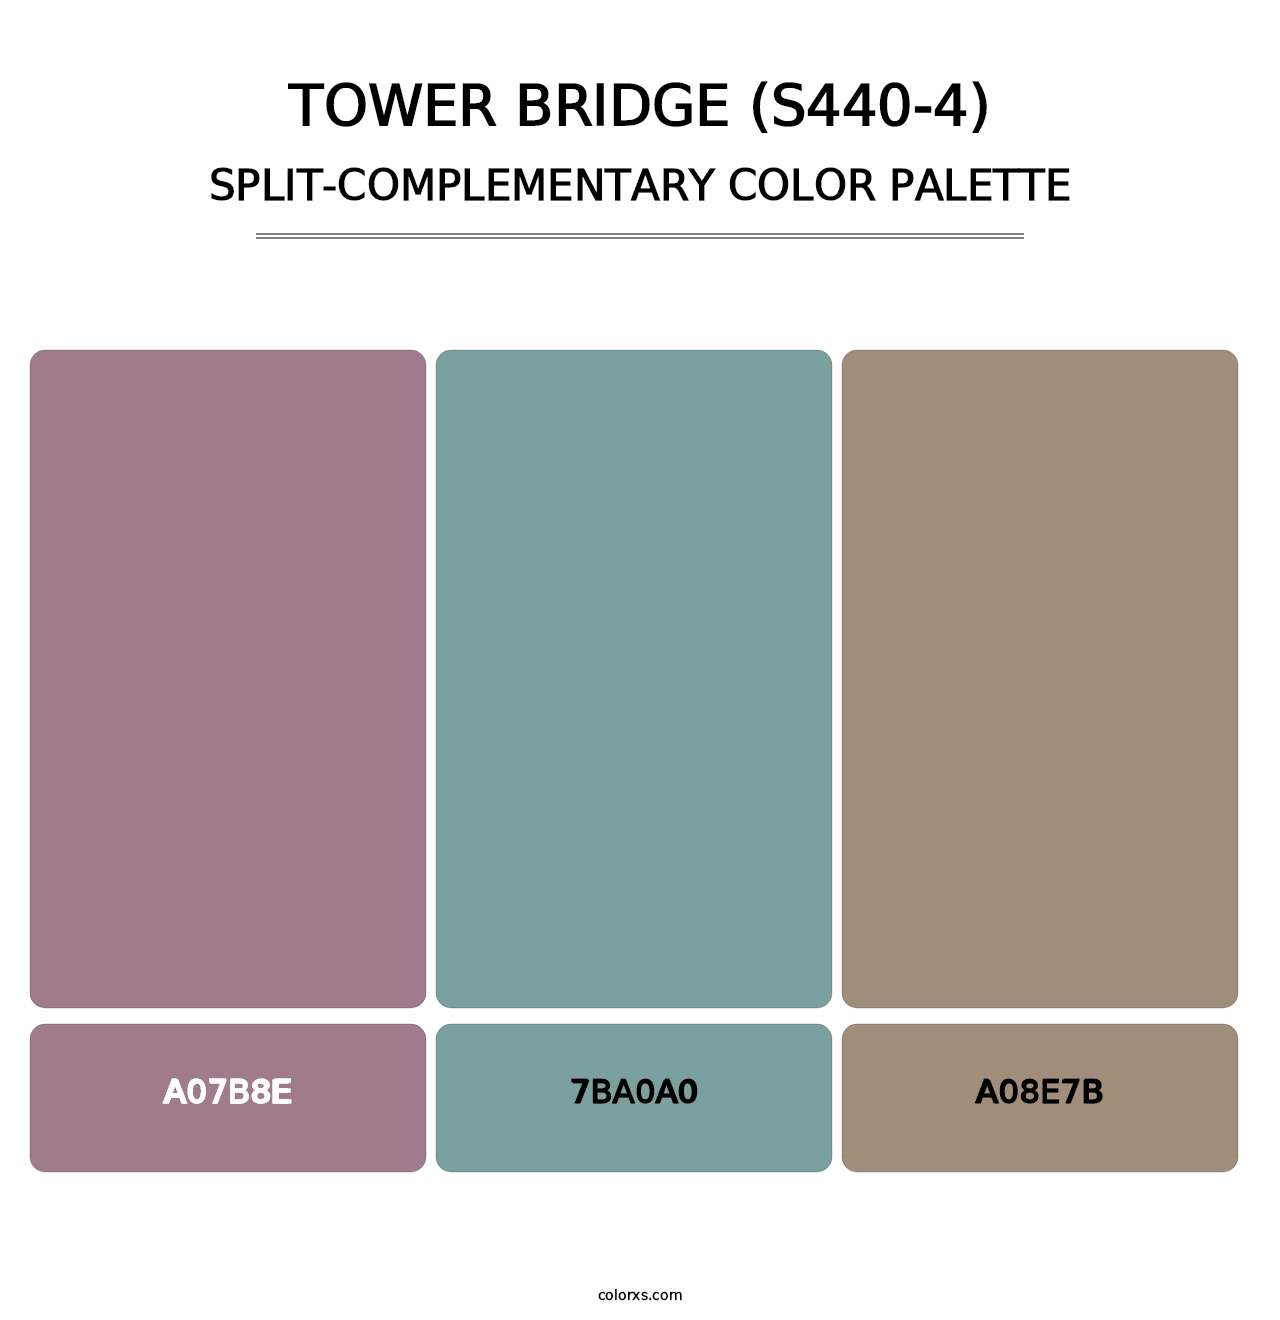 Tower Bridge (S440-4) - Split-Complementary Color Palette